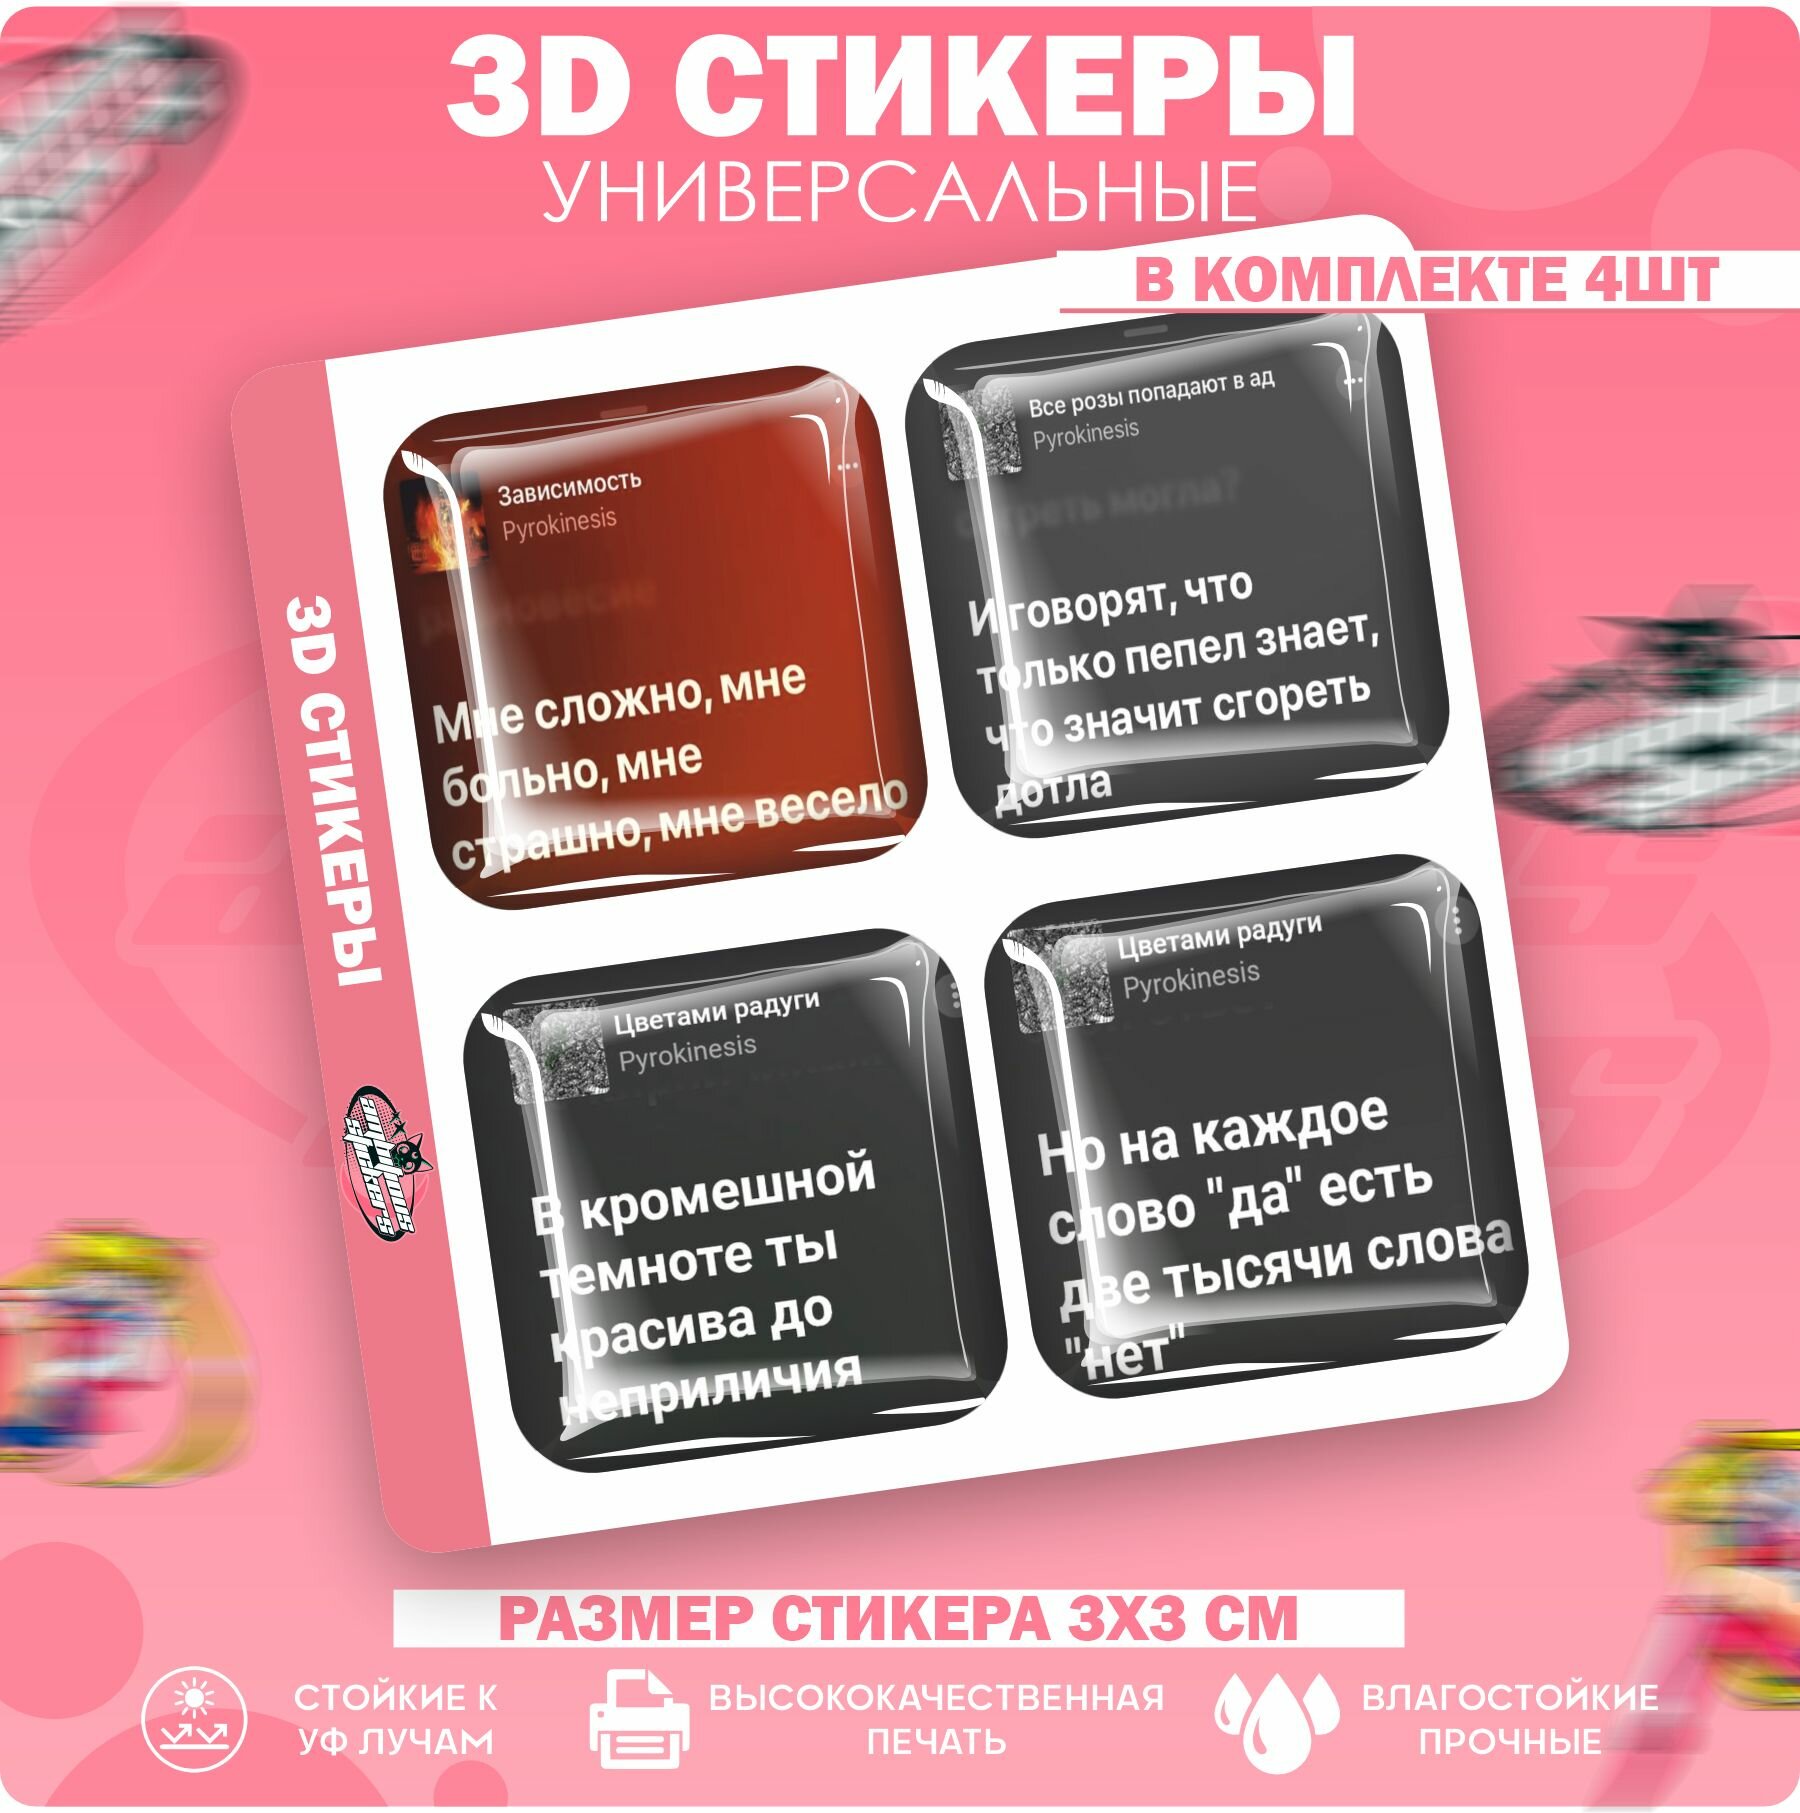 3D стикеры наклейки на телефон Pyrokinesis